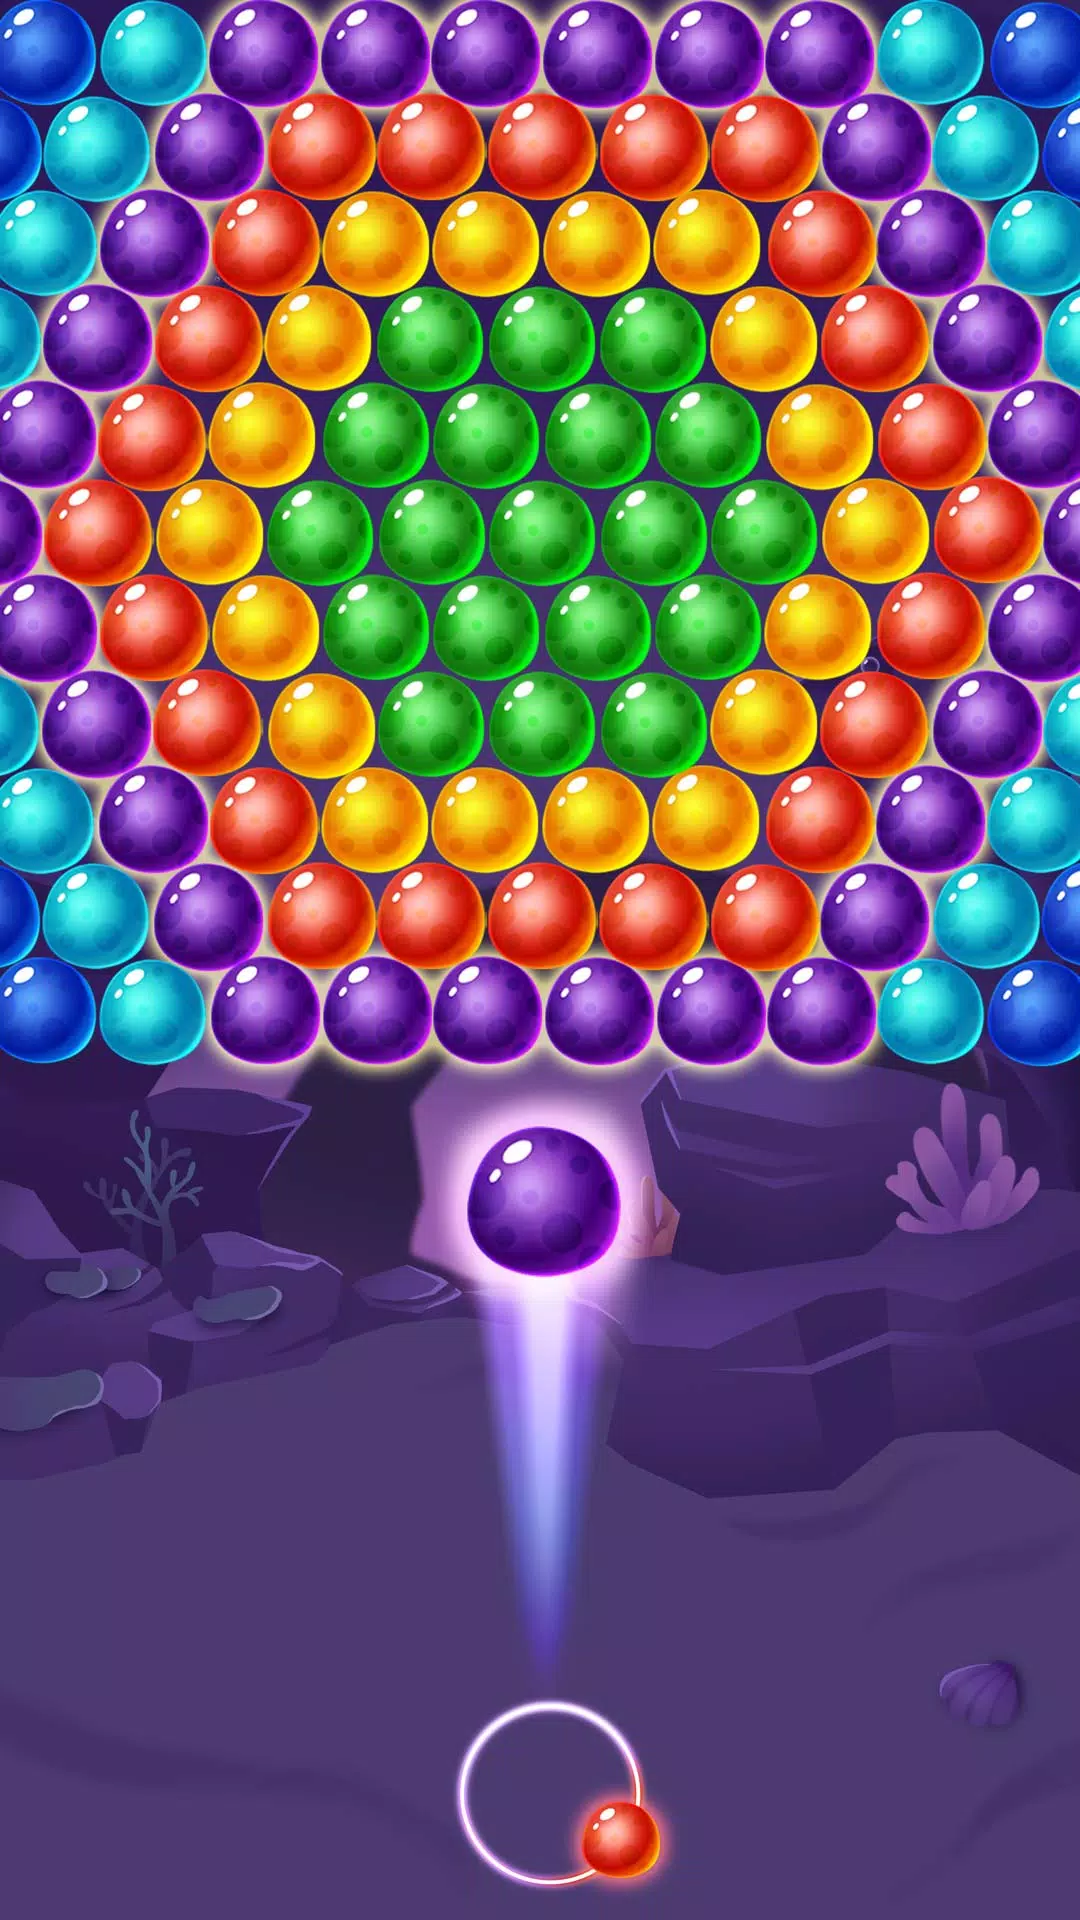 Interface do jogo bubble shooter com flores de bônus